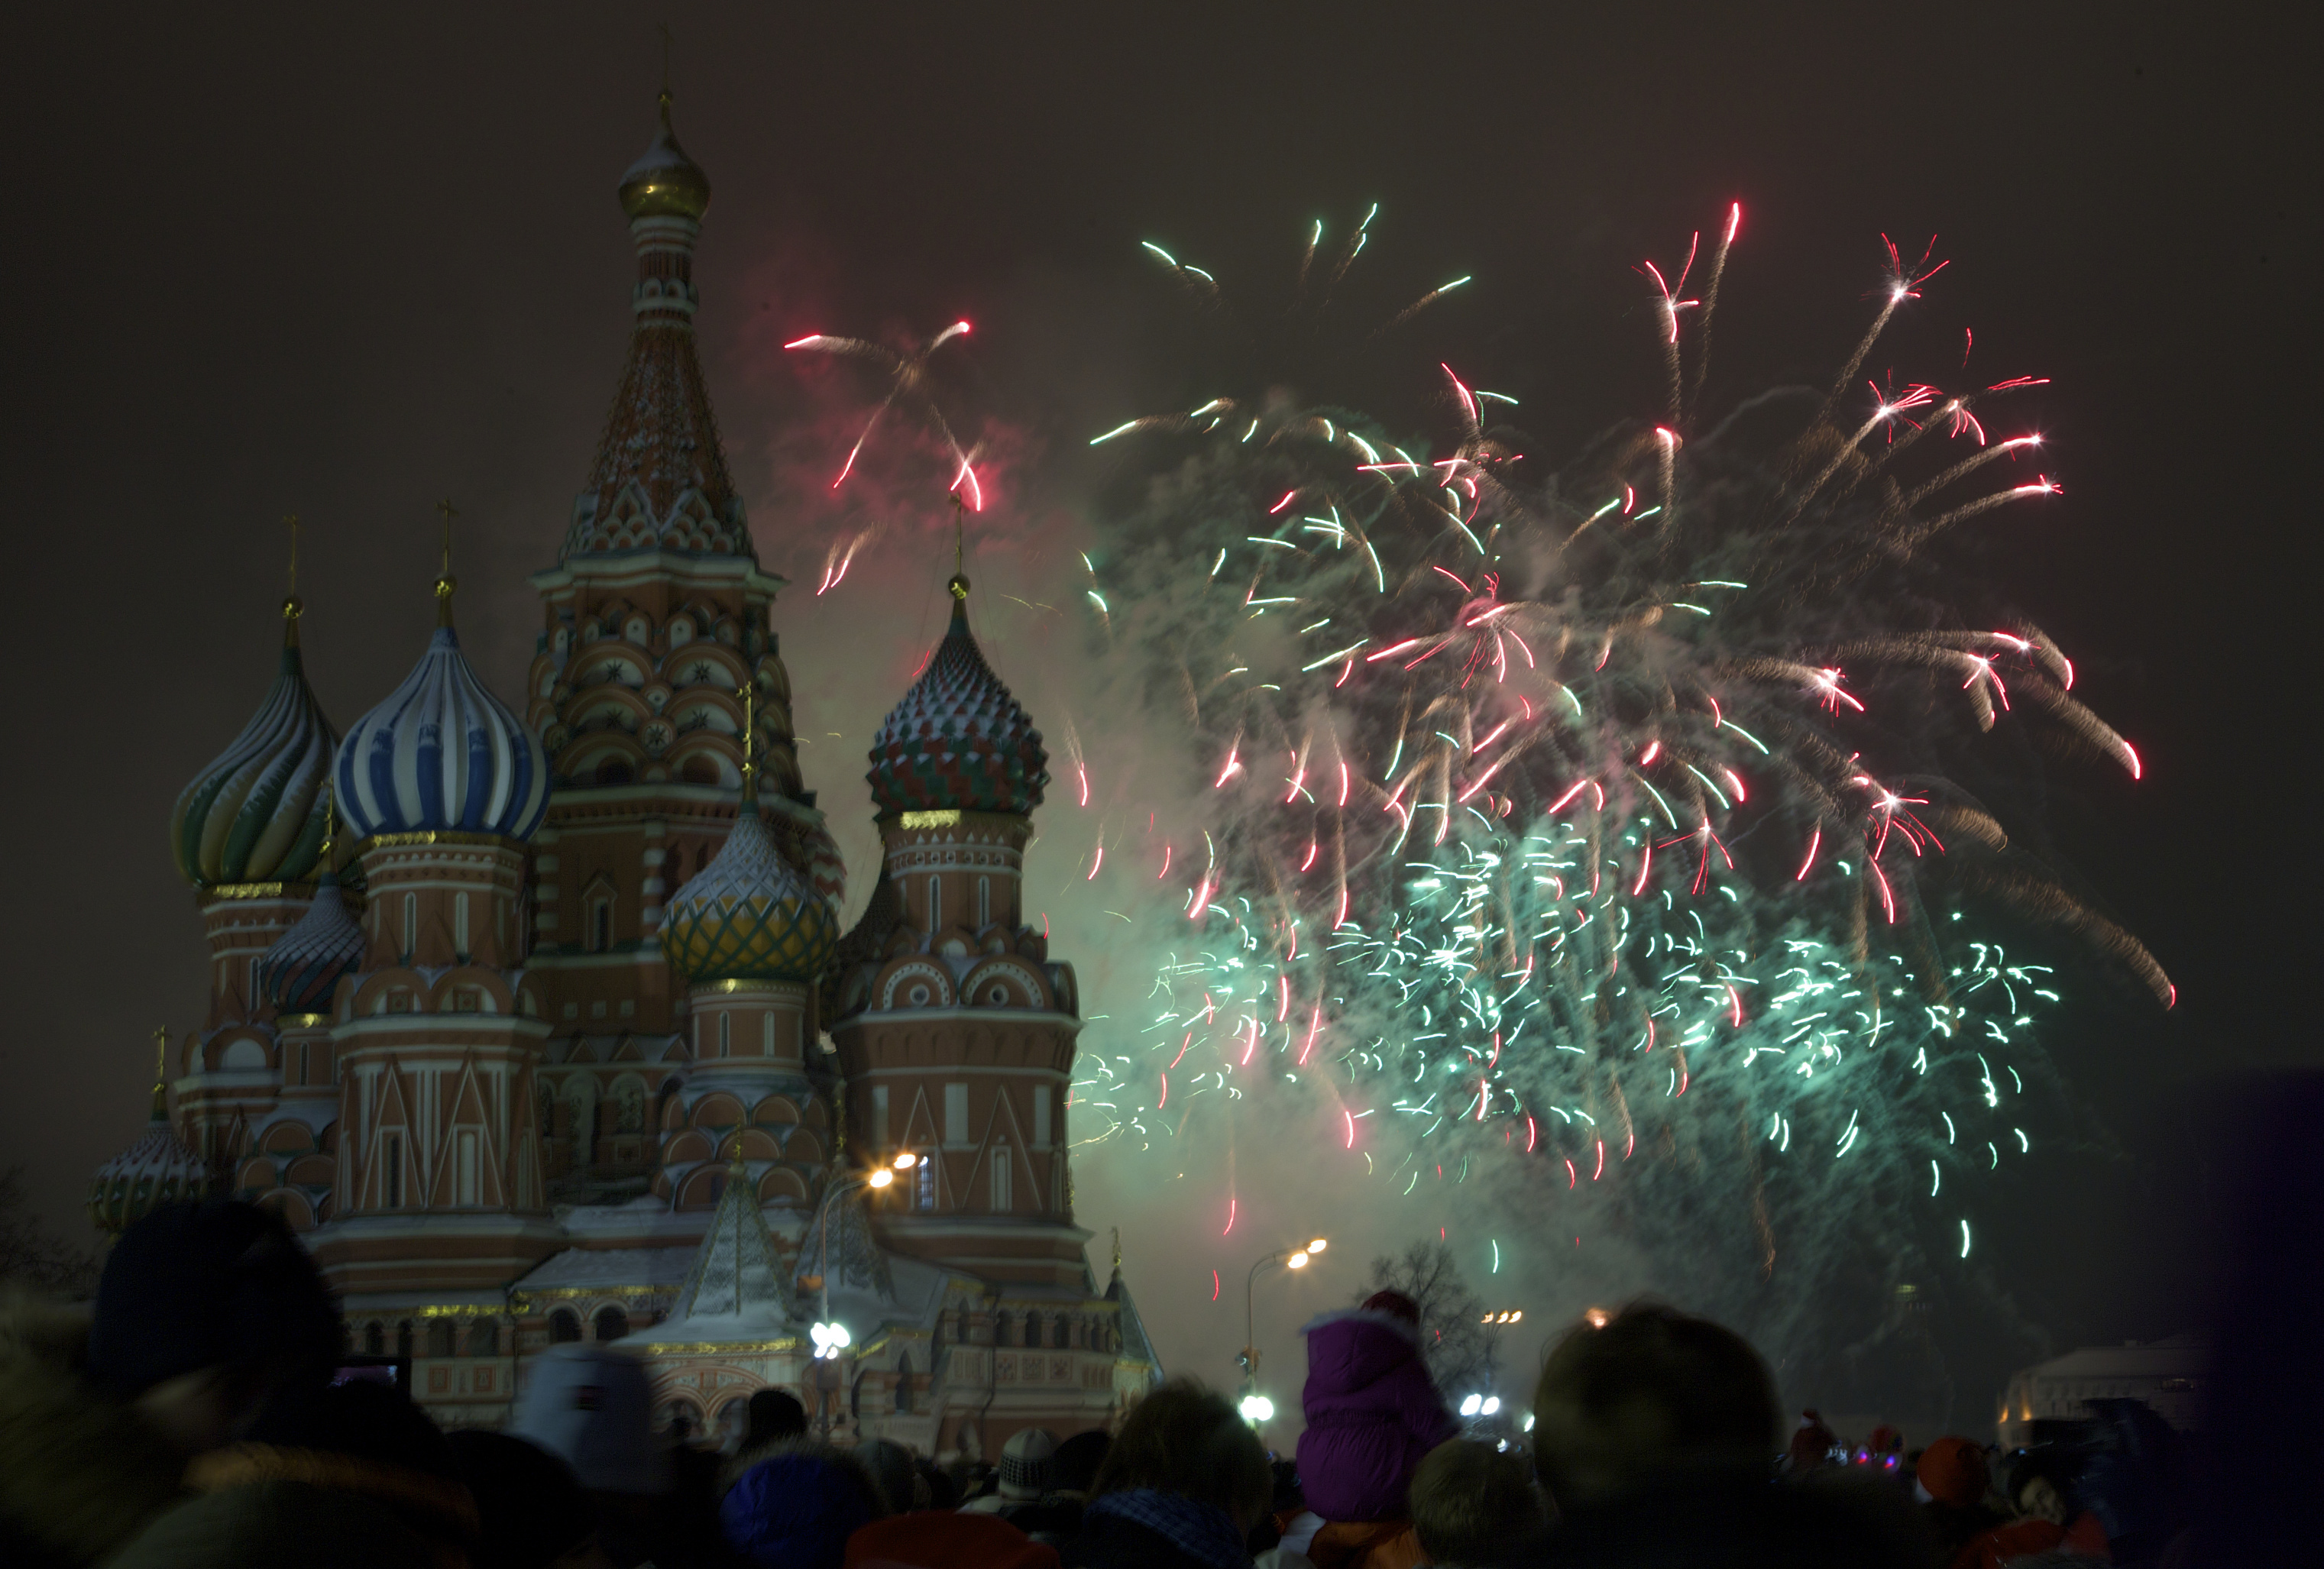 Новый год 2013 россии